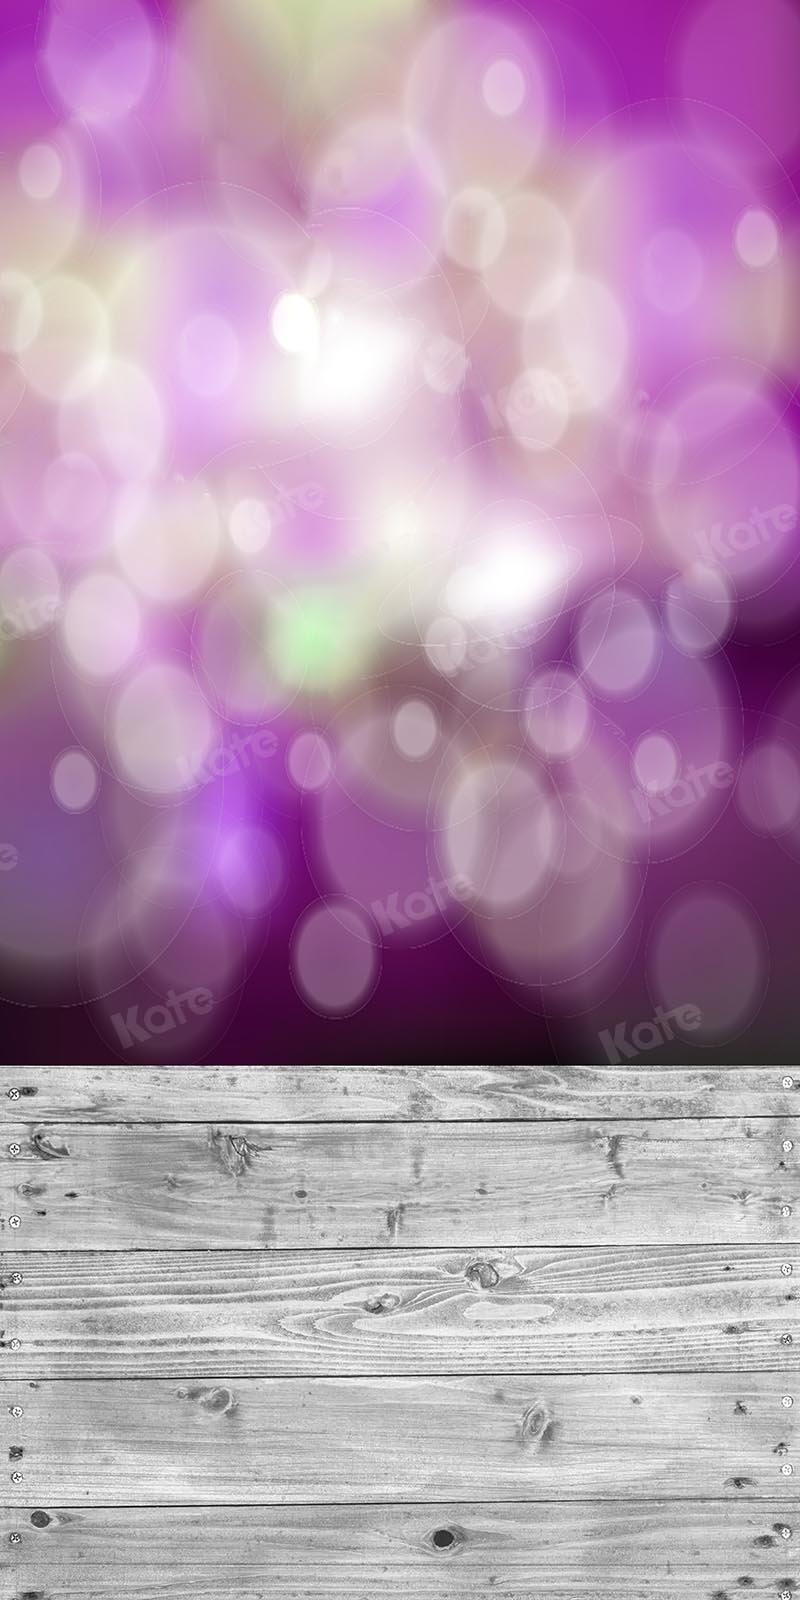 Kate Balayage la toile de fond Bokeh ton violet pour la photographie conçue par Kate Image